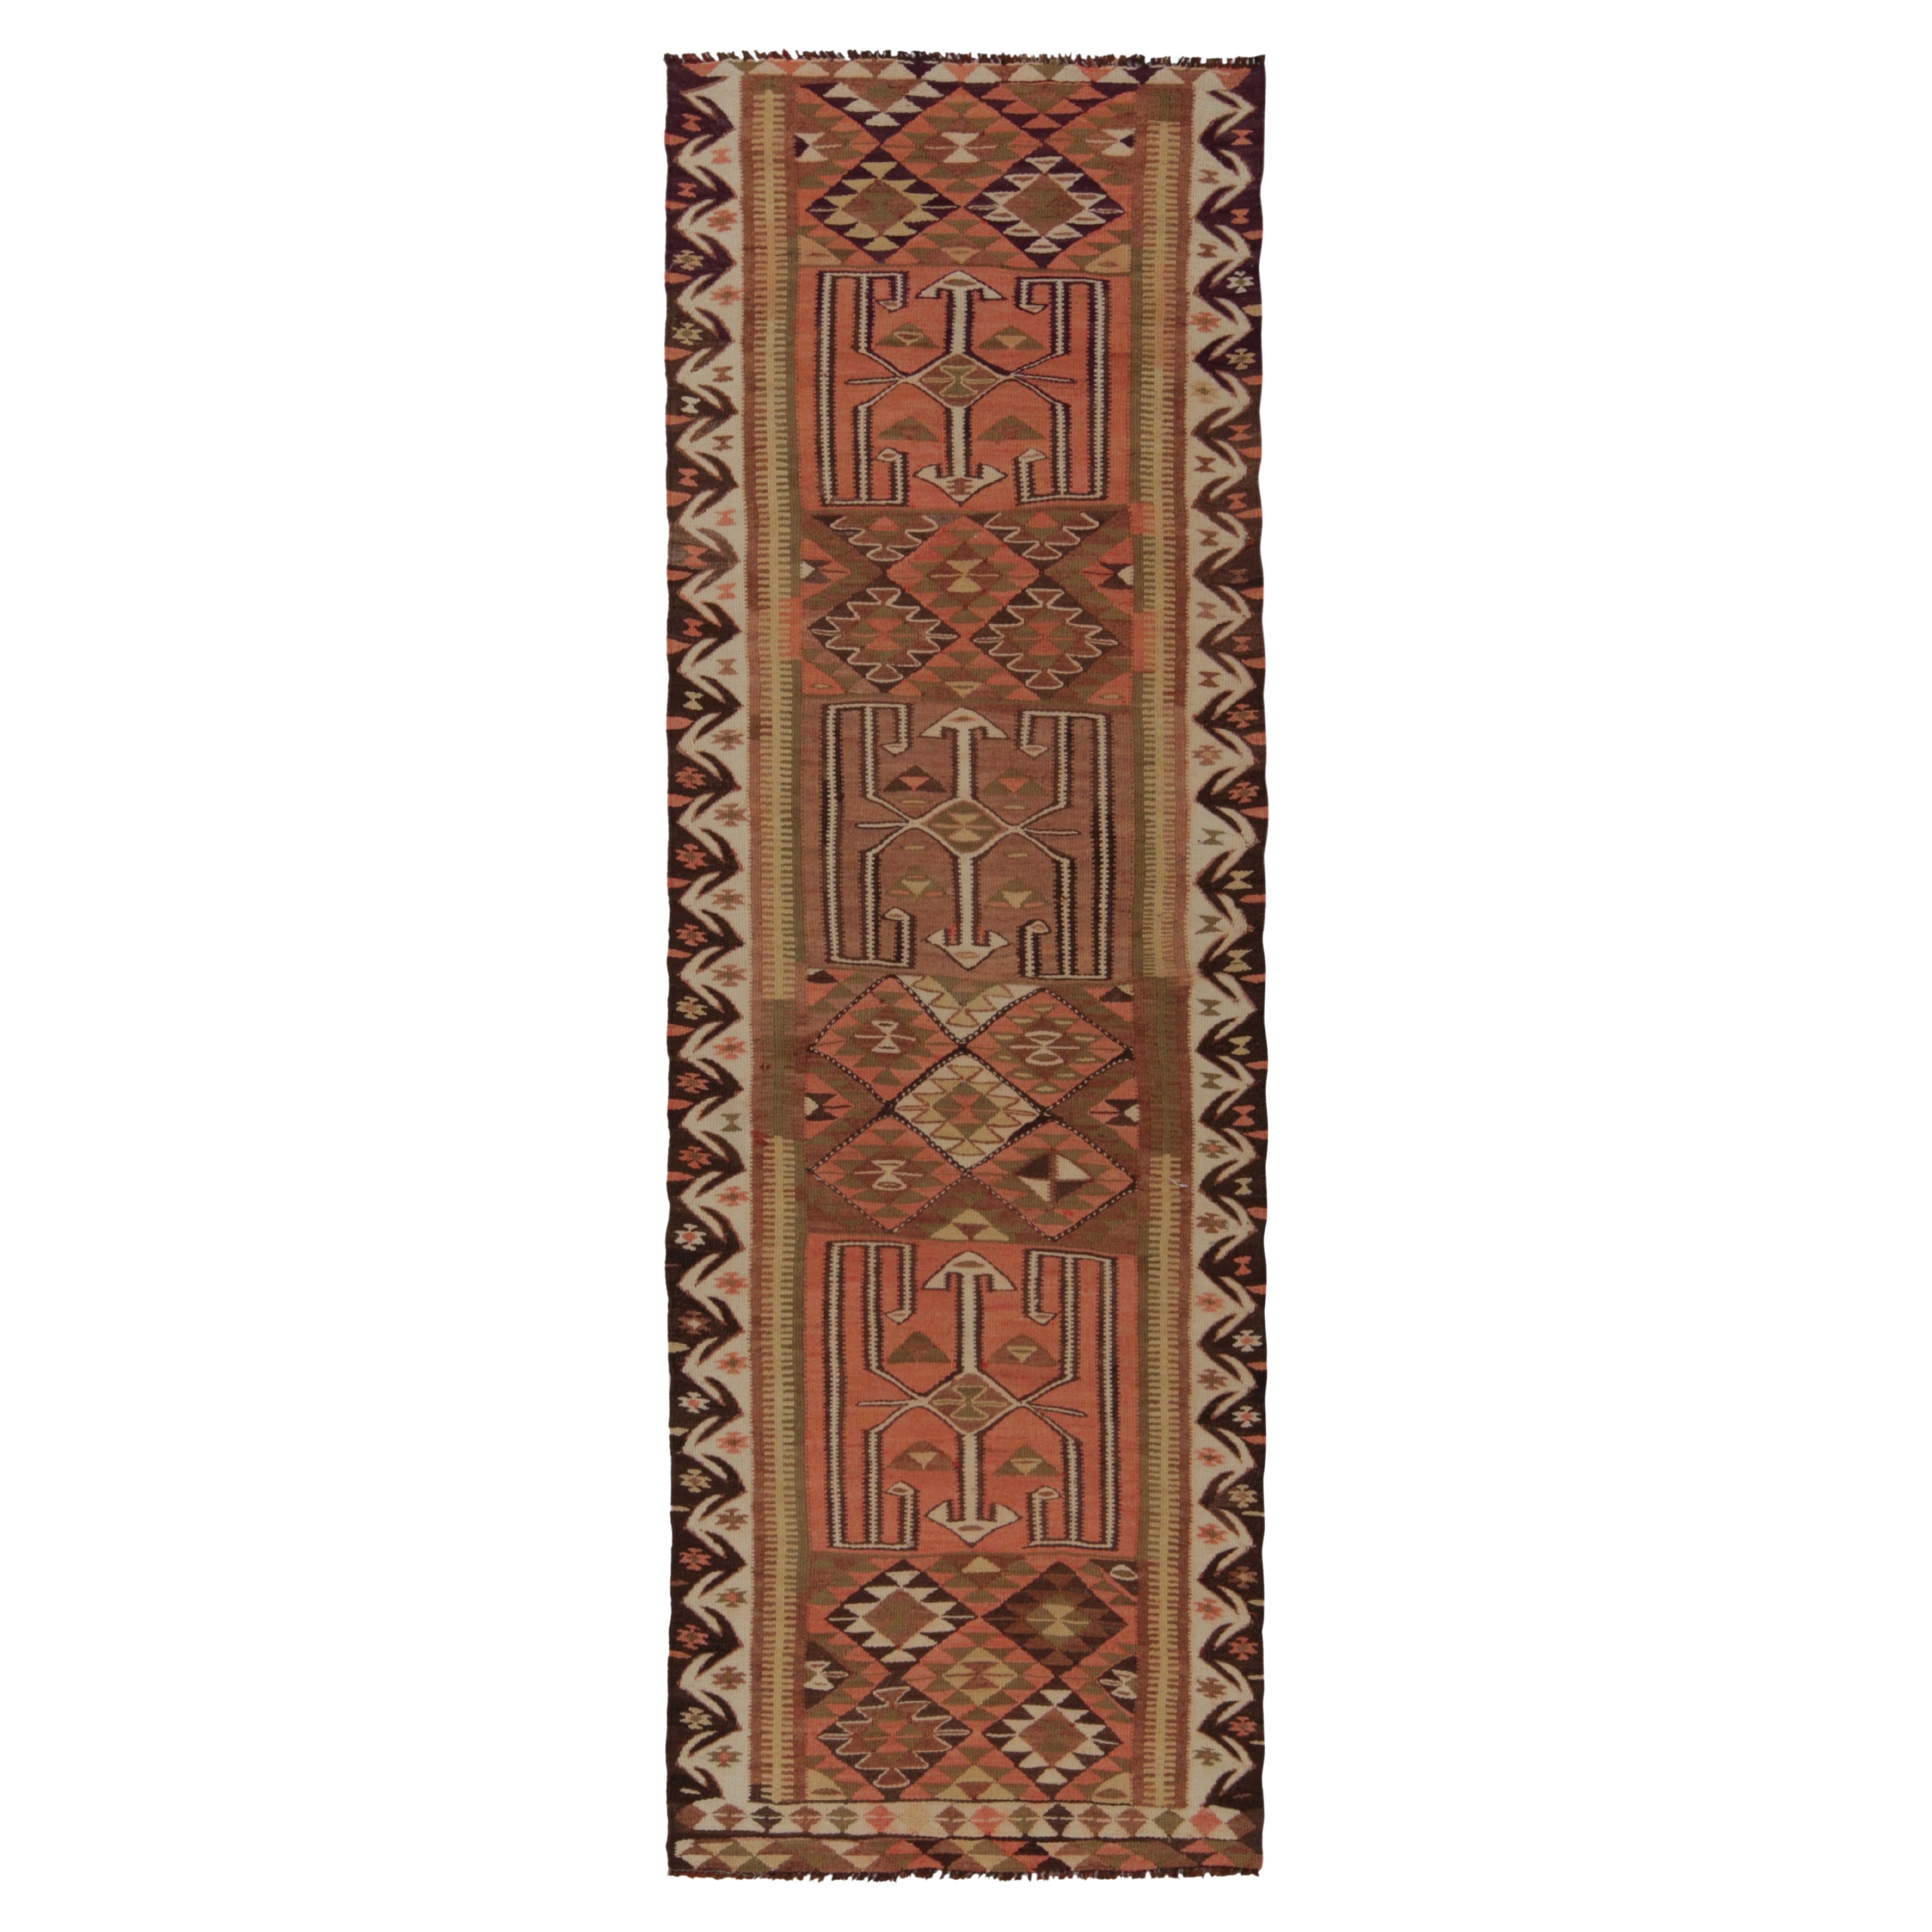 Vintage Tribal Kilim Runner in Beige-Brown Geometric Pattern by Rug & Kilim For Sale